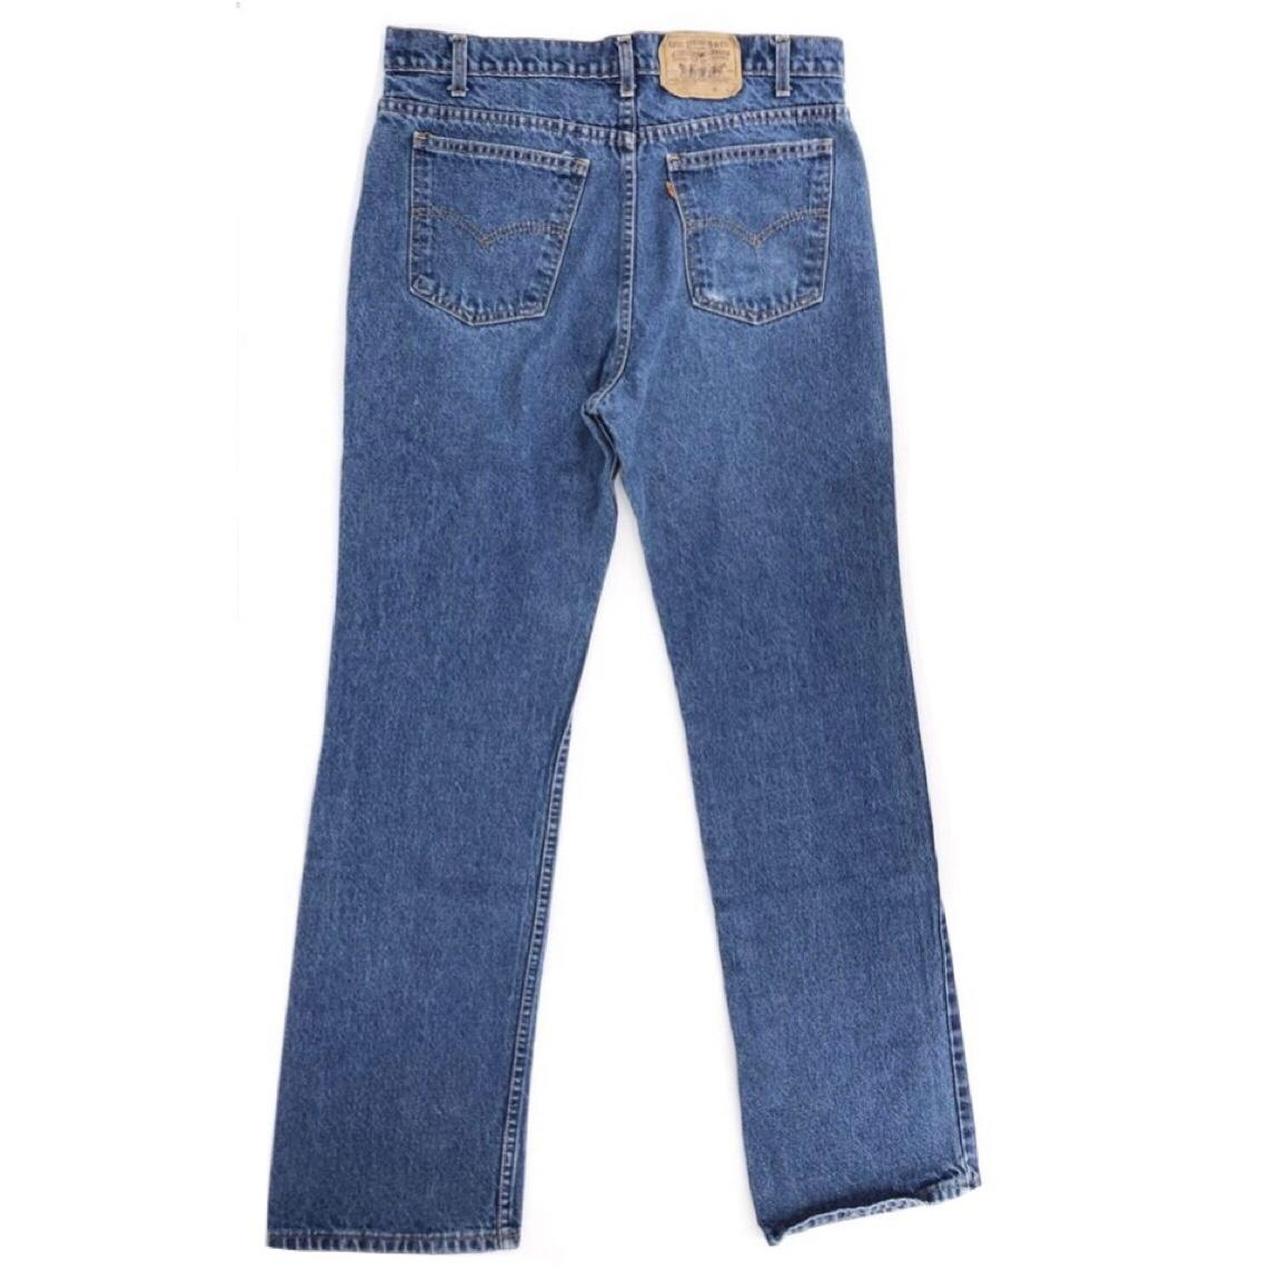 90s vintage 517 Levi’s Saddleman jeans 1990s VTG... - Depop